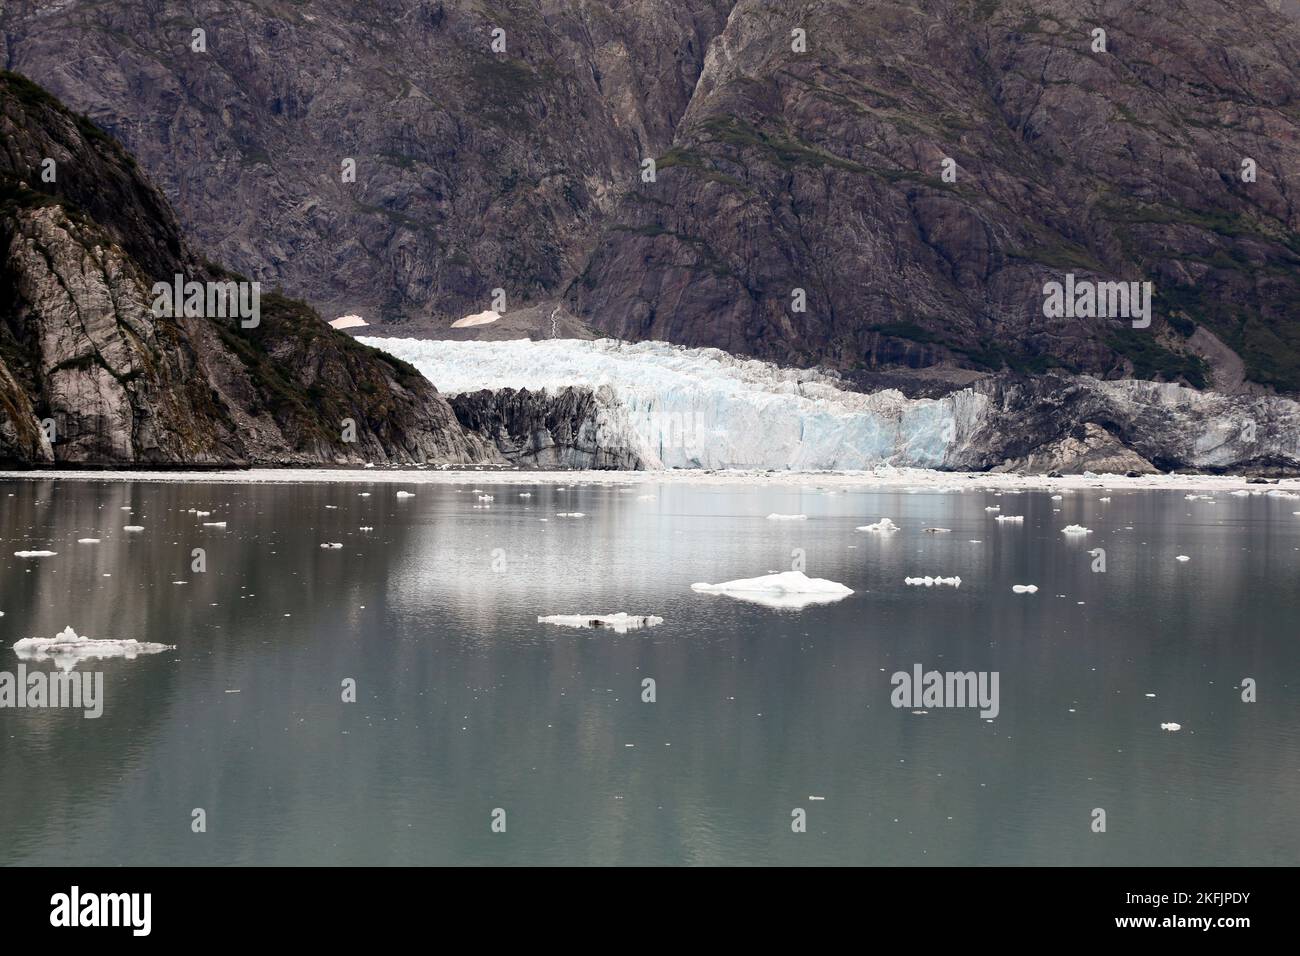 Glacier Bay Margerie icebergs. Le parc national et réserve de Glacier Bay est un parc national américain. Alaska près du Canada. Environnement protégé. Banque D'Images